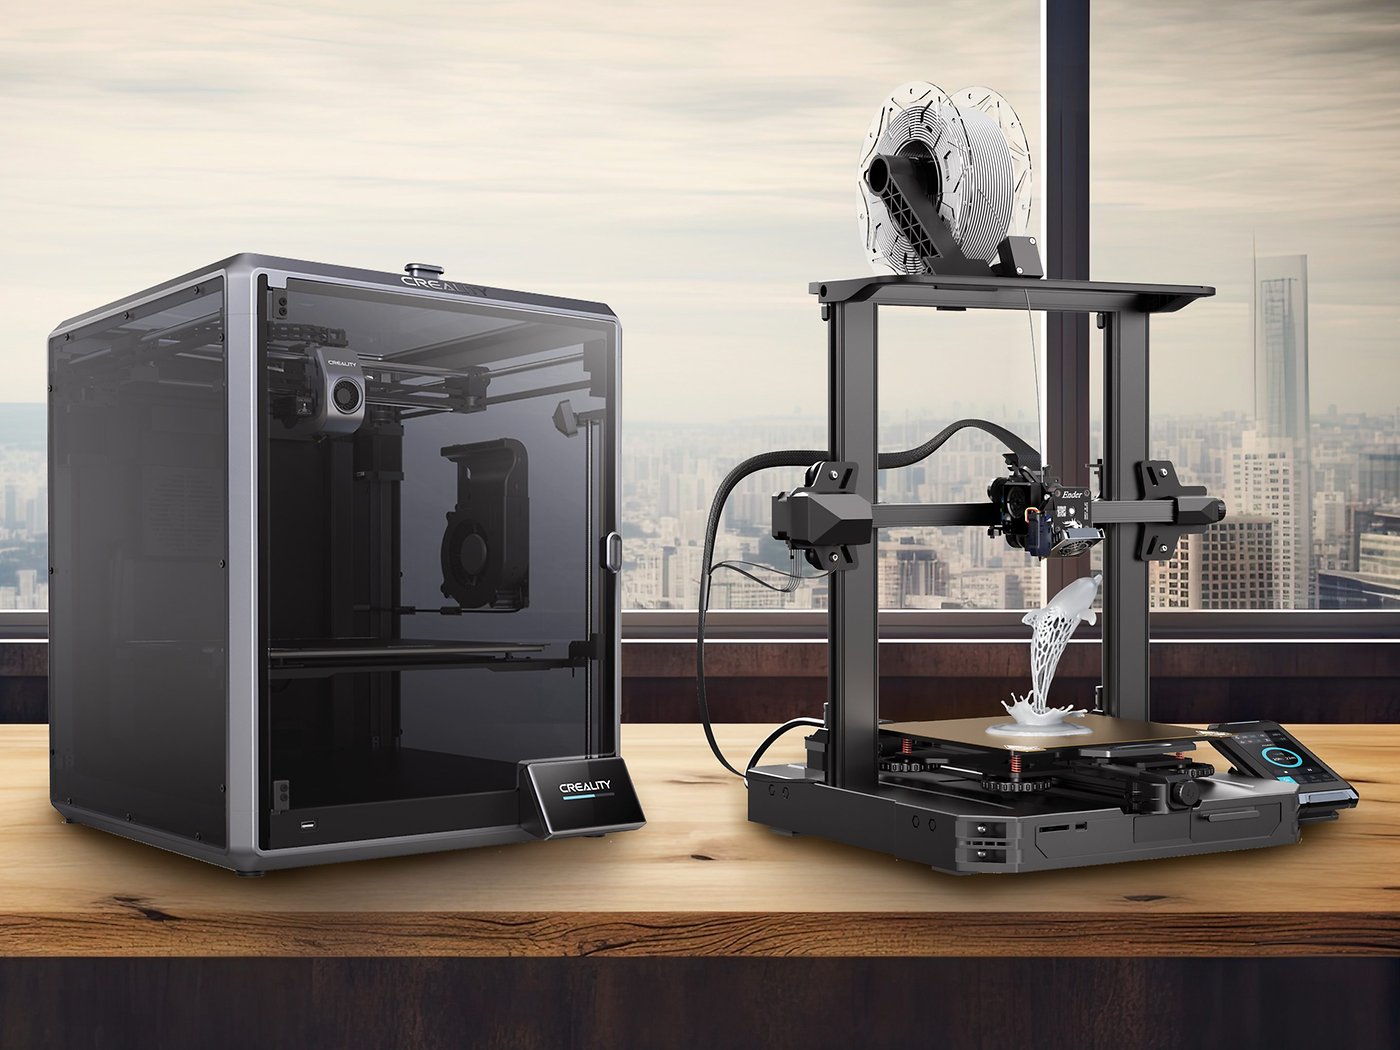 Faites des centaines d'euros d'économie sur ces imprimantes 3D